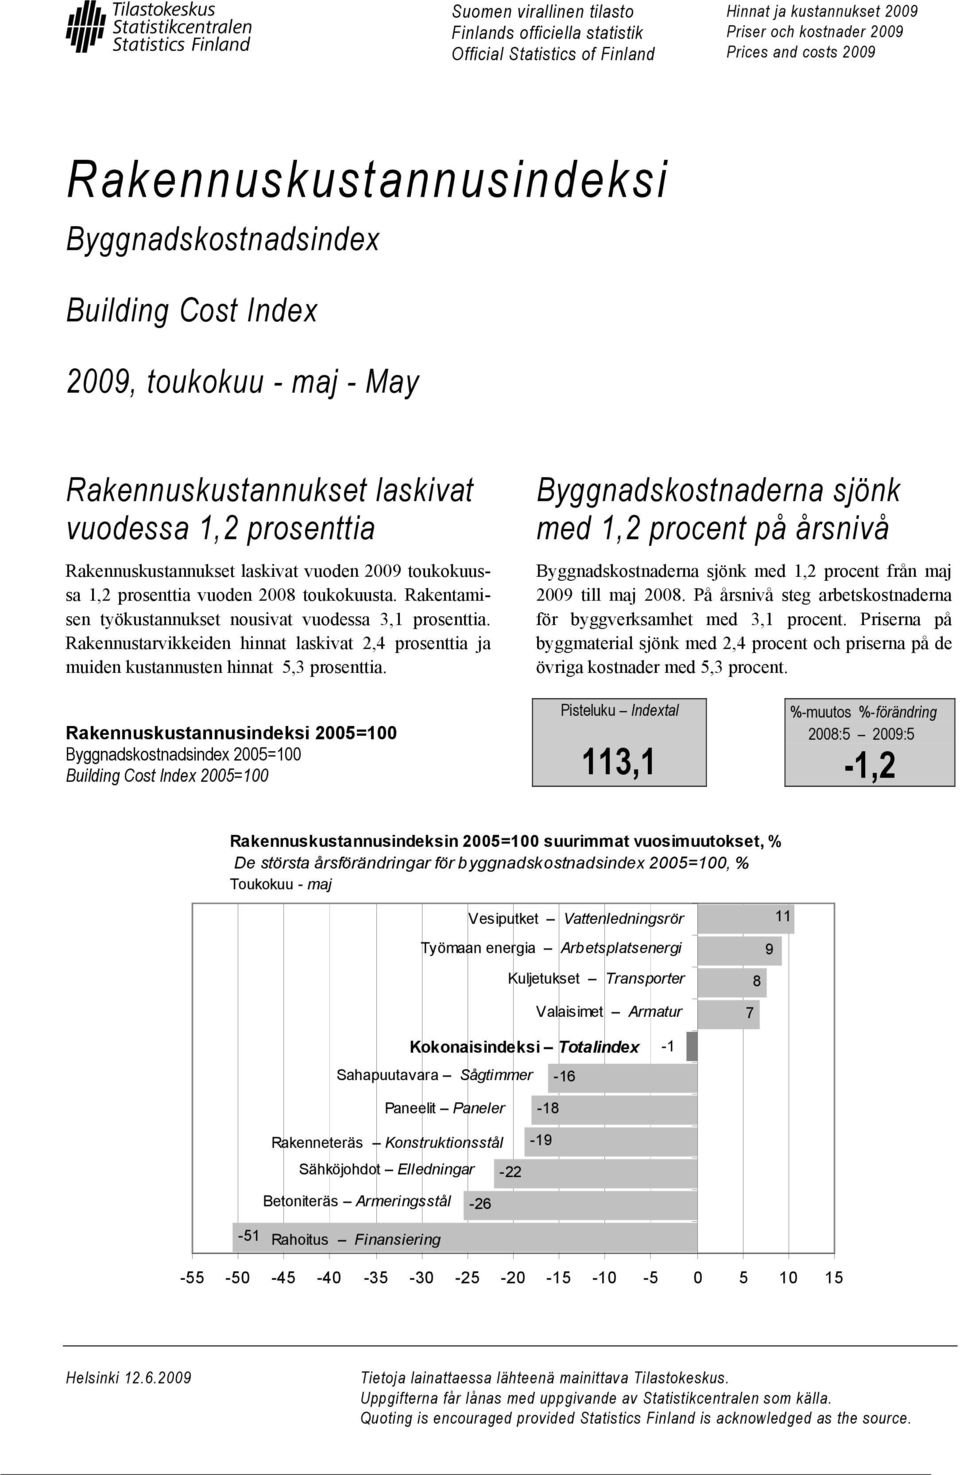 2008 toukokuusta. Rakentamisen työkustannukset nousivat vuodessa 3,1 prosenttia. Rakennustarvikkeiden hinnat laskivat 2,4 prosenttia ja muiden kustannusten hinnat 5,3 prosenttia.